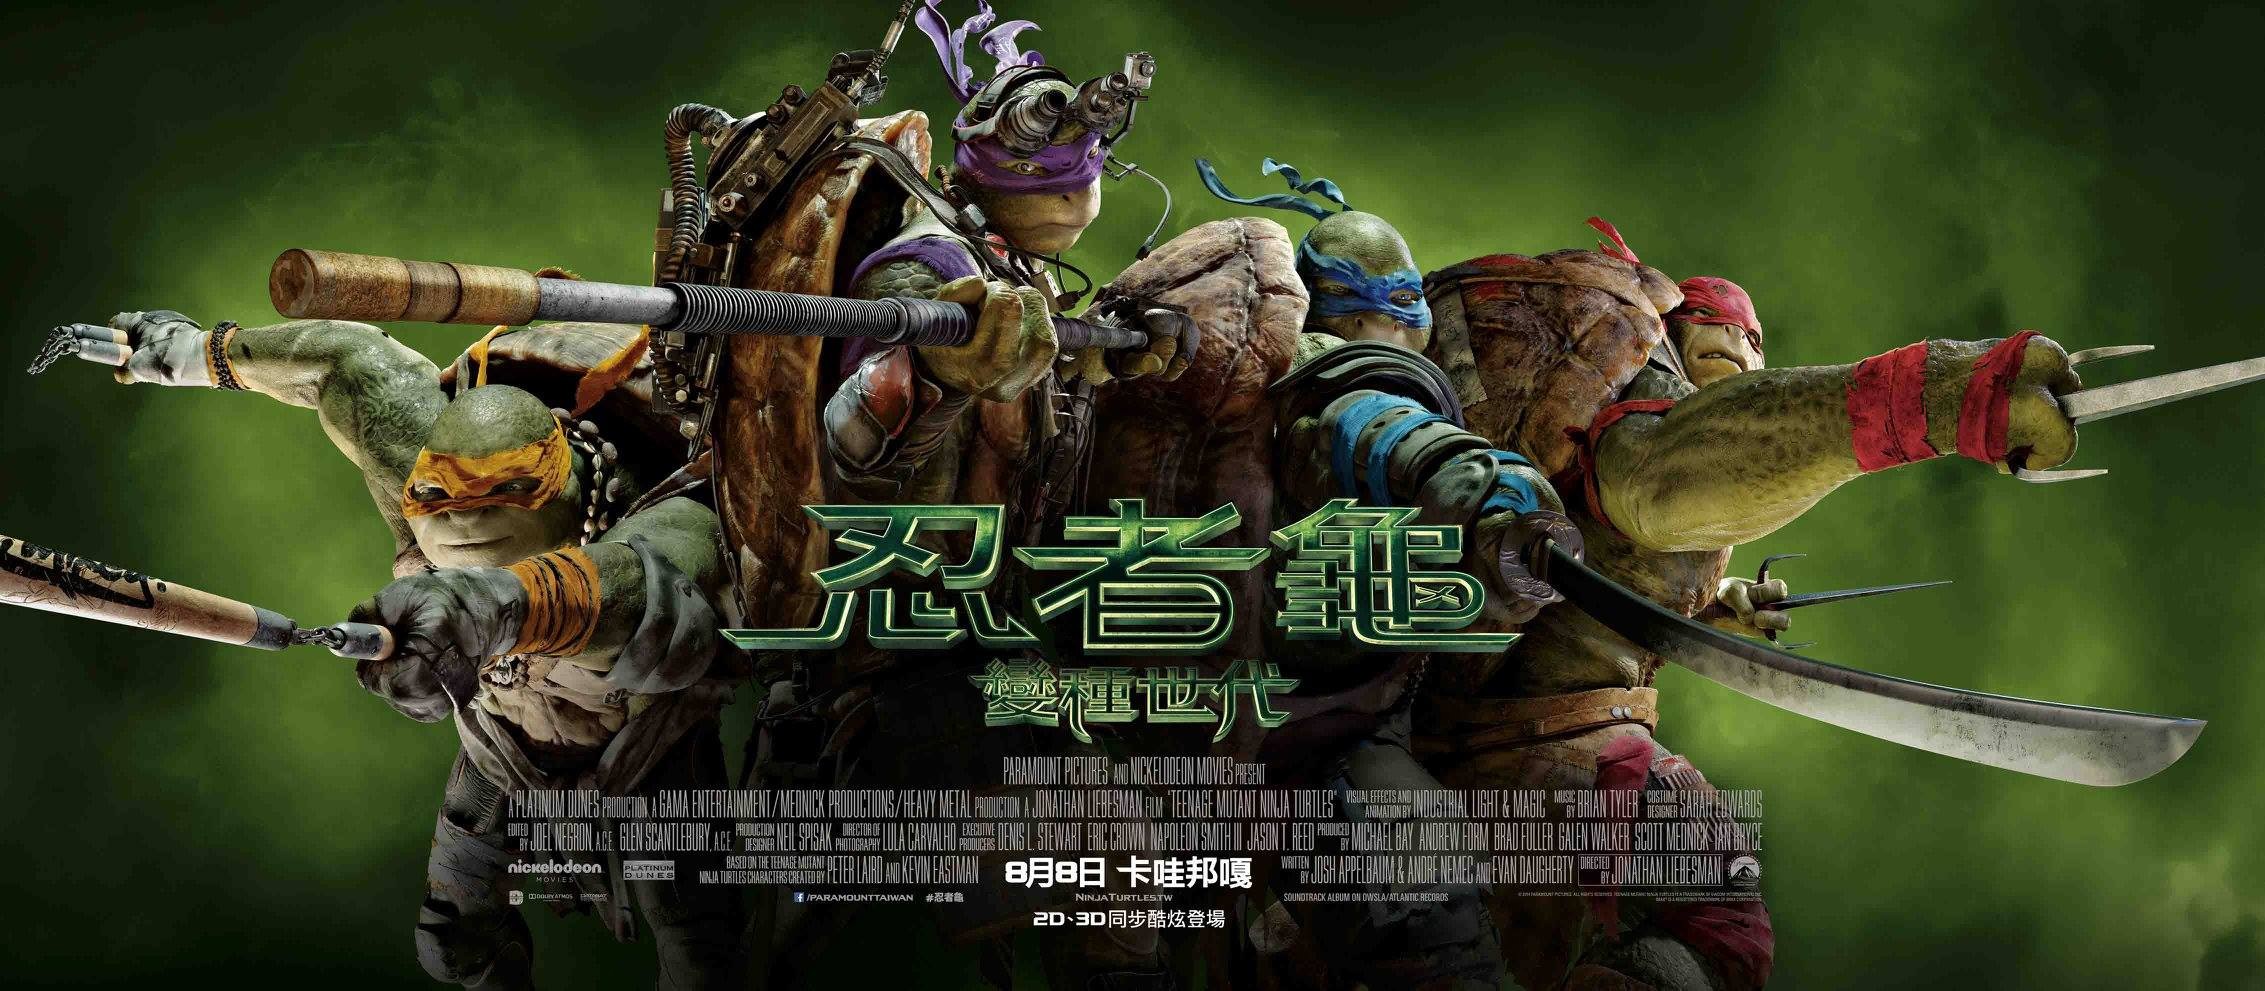 Mega Sized Movie Poster Image for Teenage Mutant Ninja Turtles (#16 of 22)